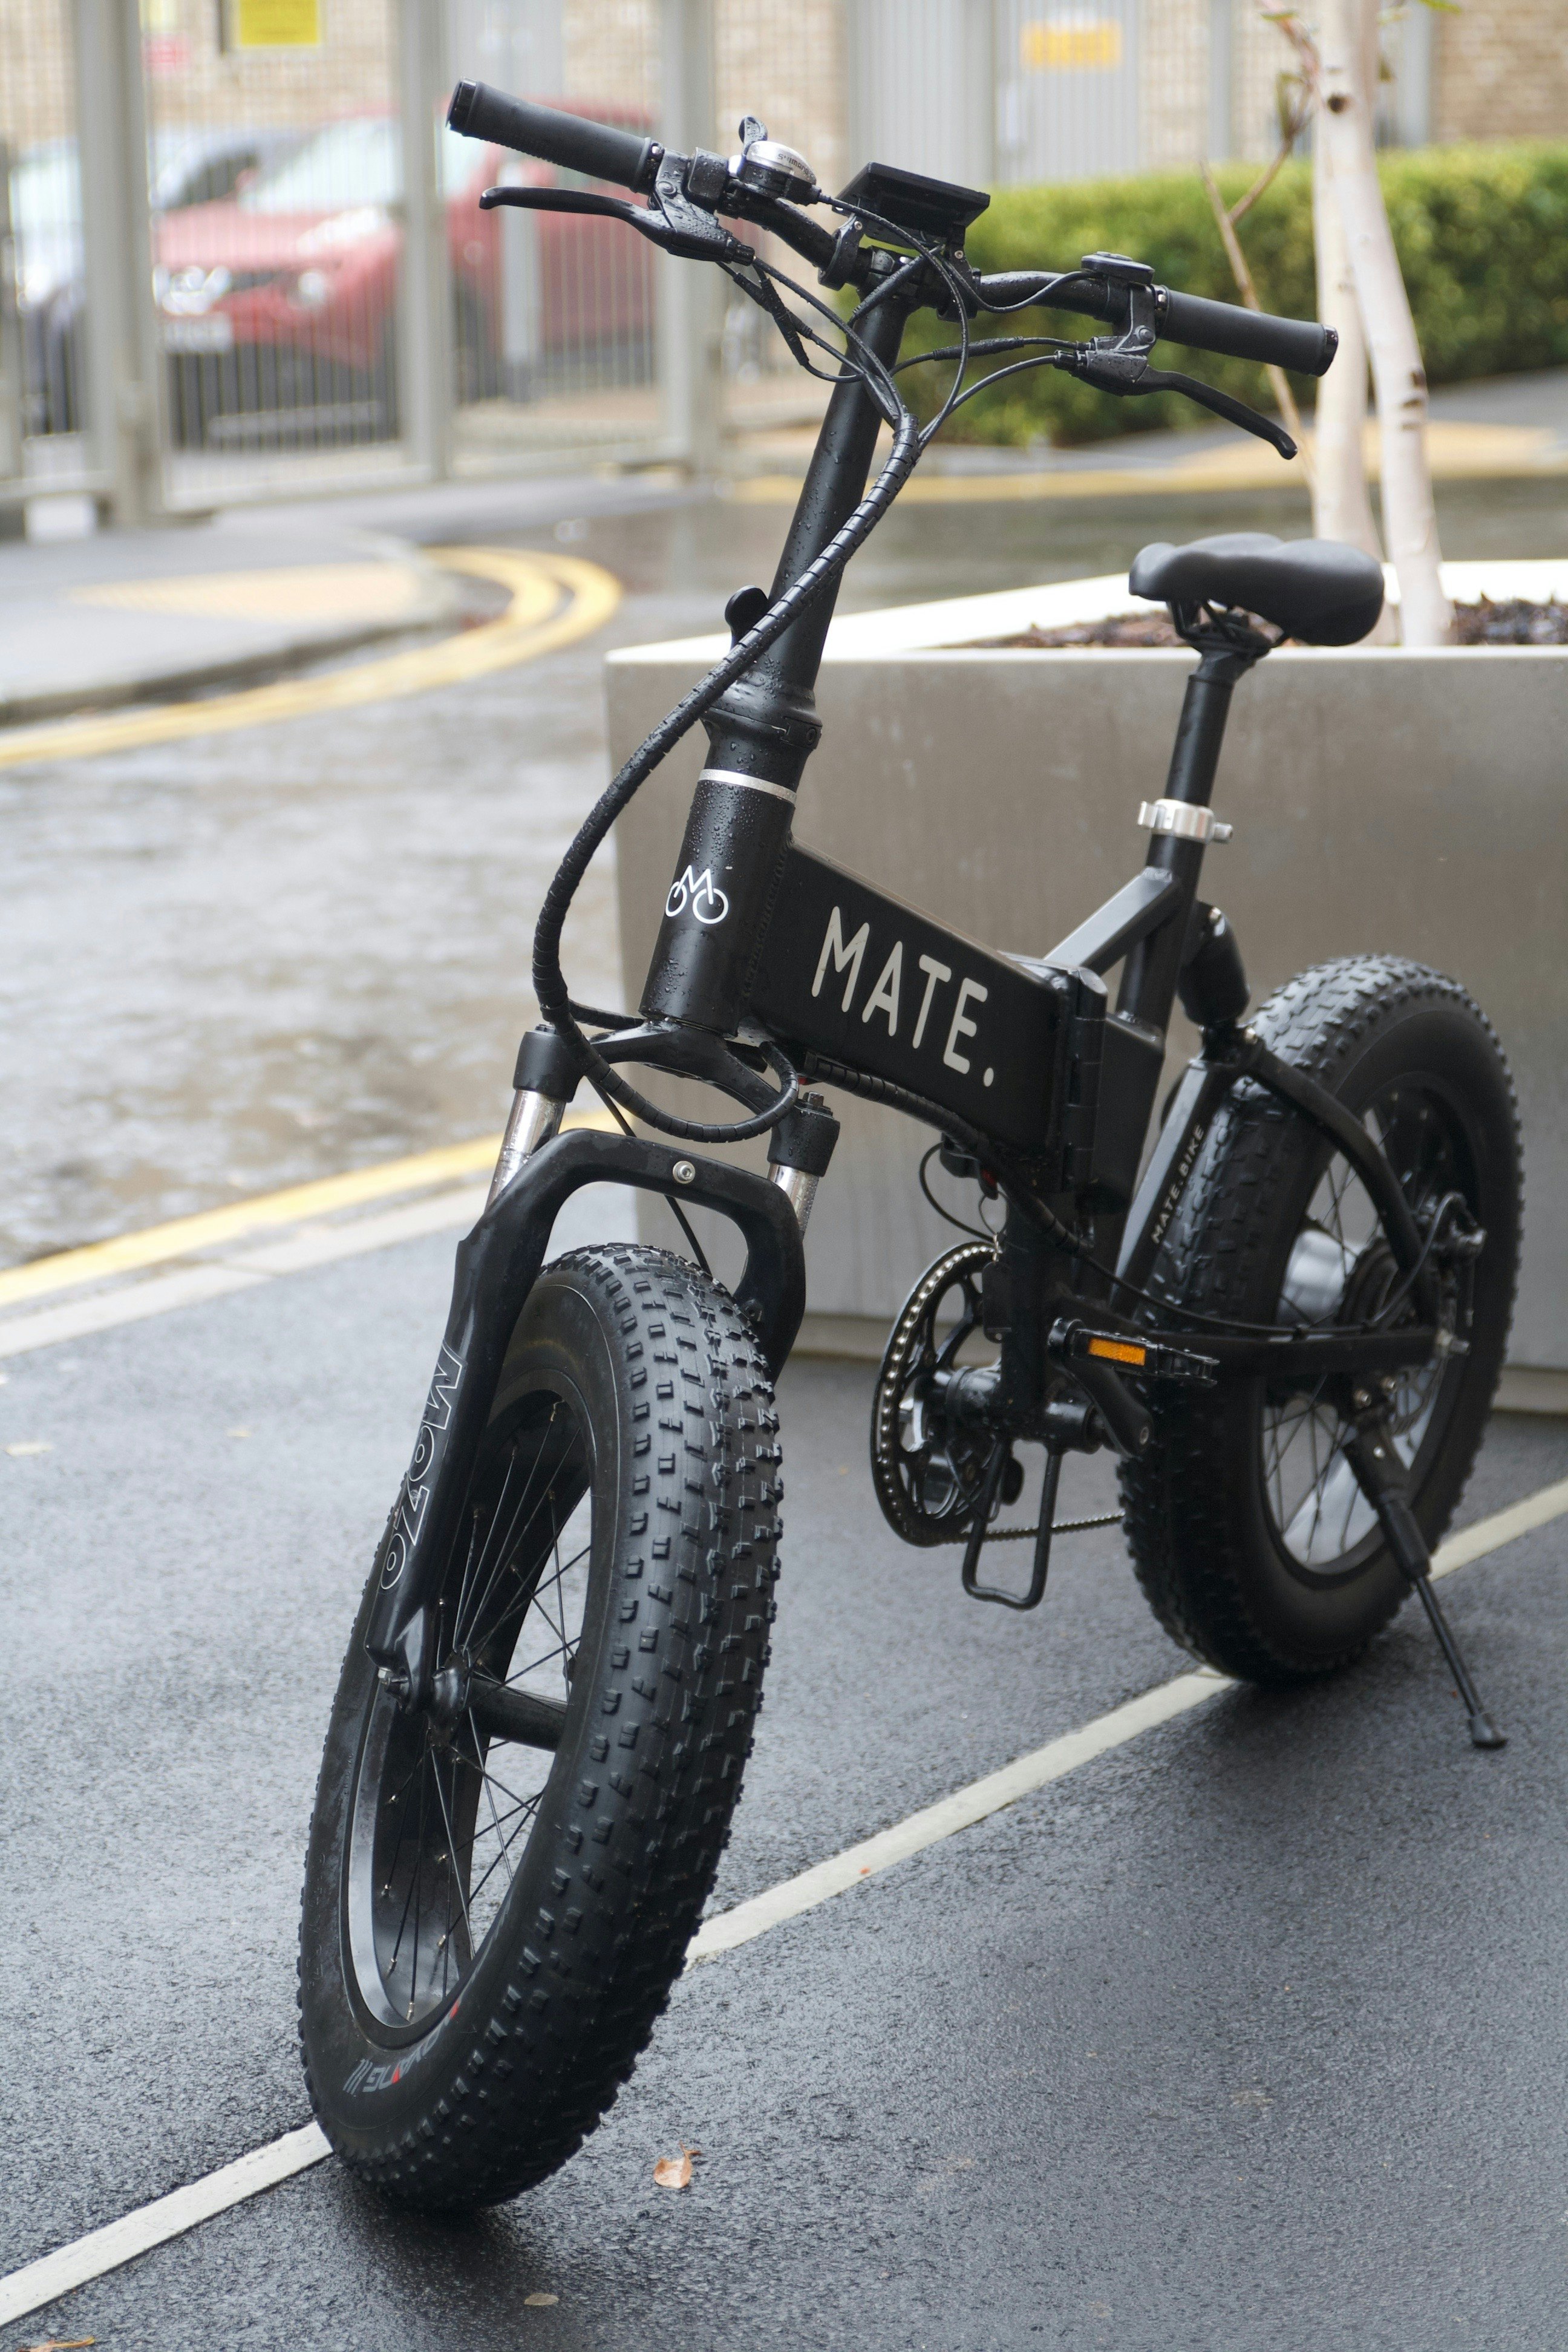 mate bike review